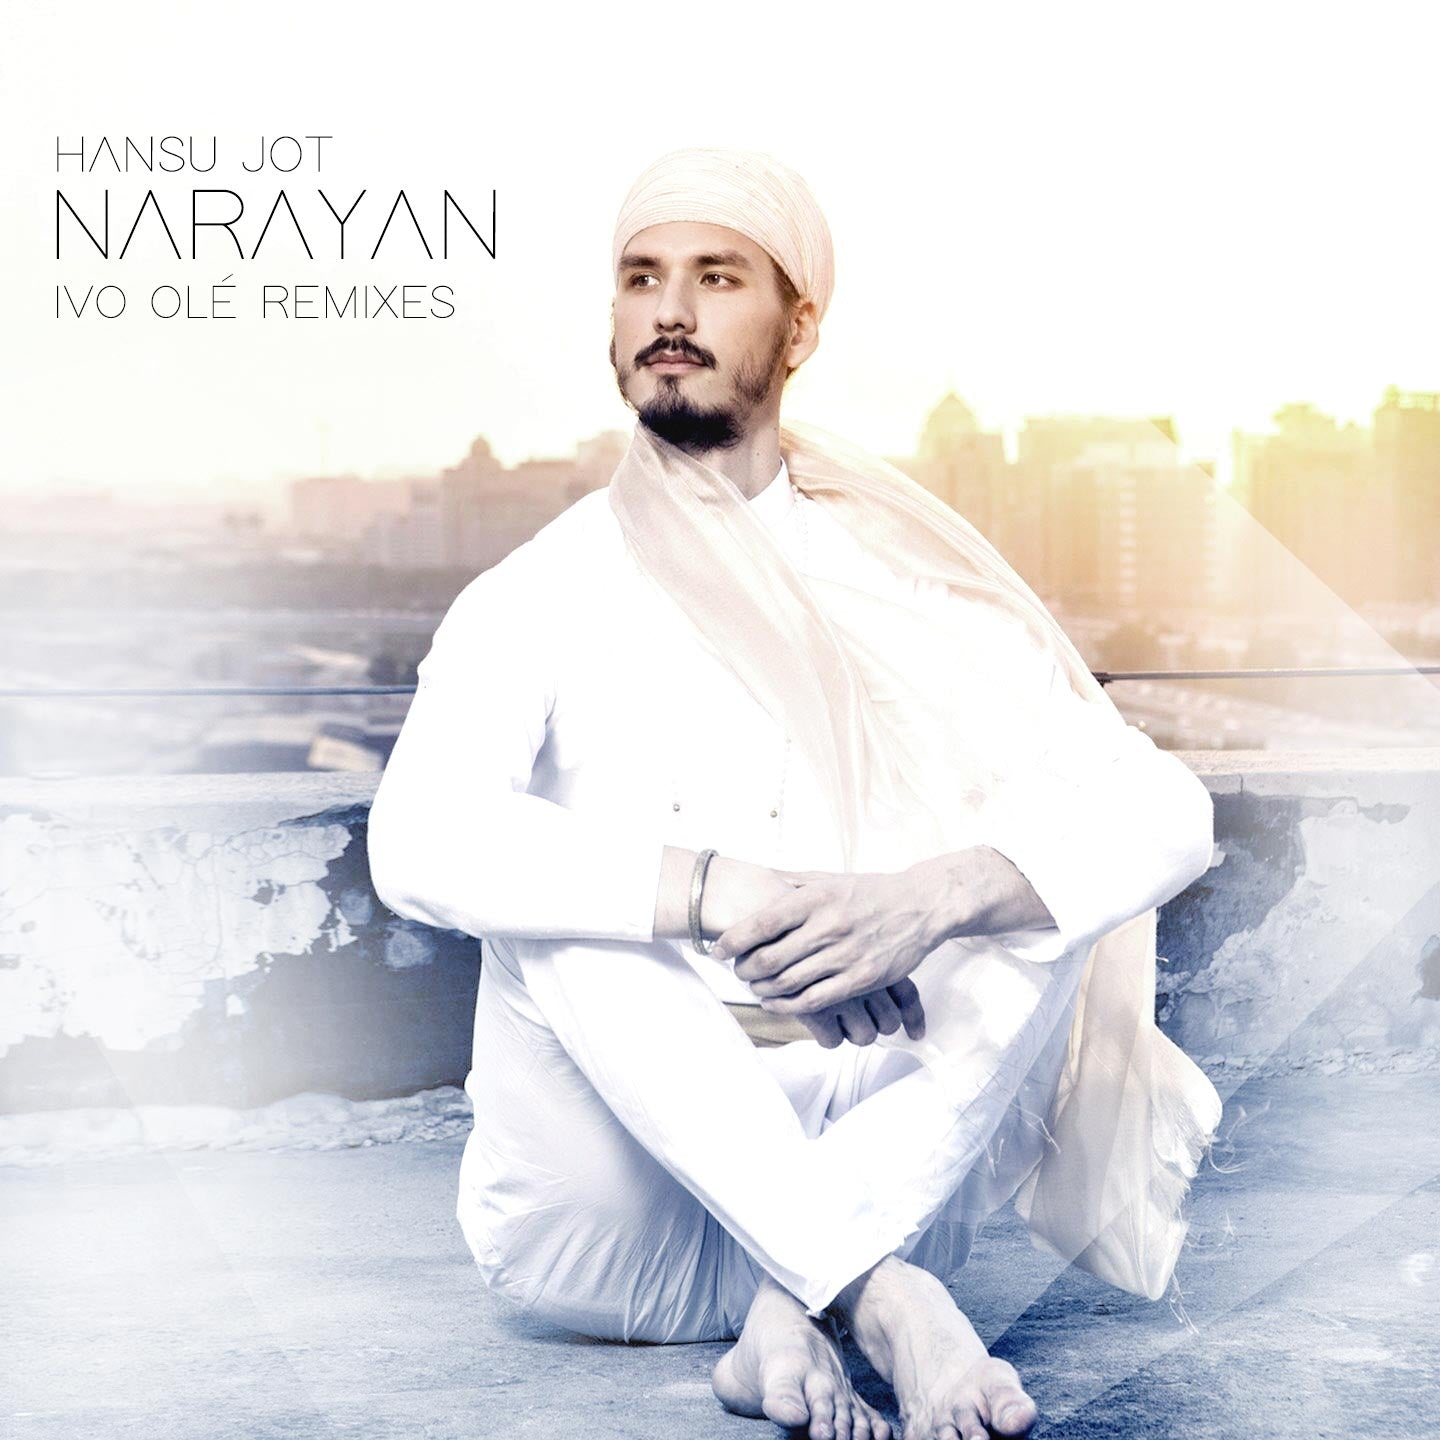 Narayan Ivo Ole Remixes - Hansu Jot - complet